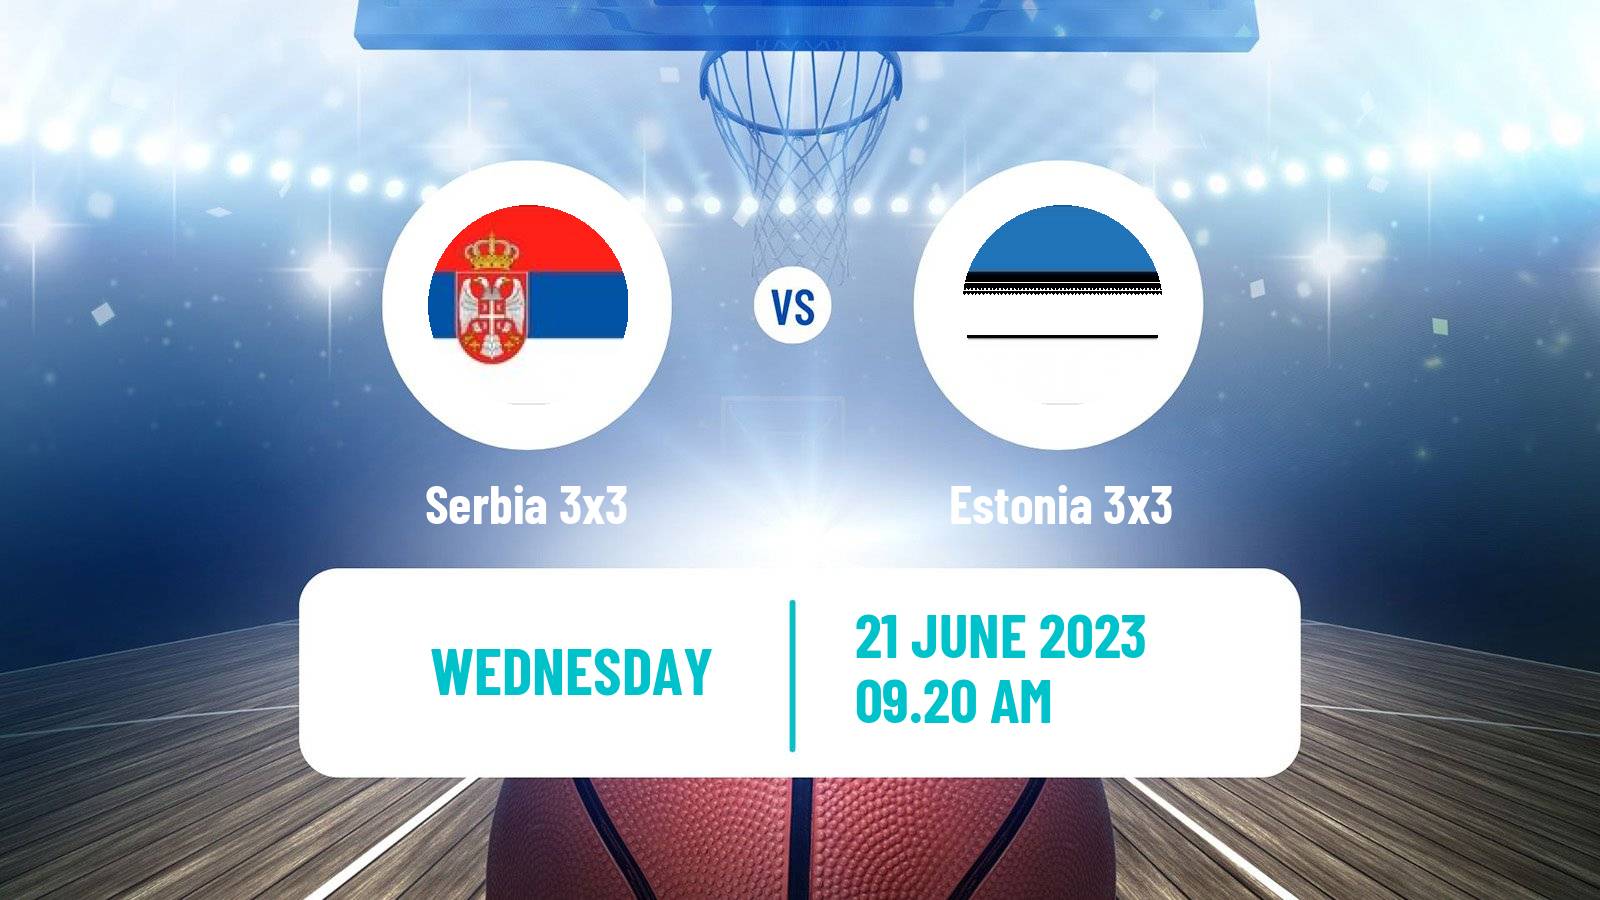 Basketball European Games 3x3  Serbia 3x3 - Estonia 3x3